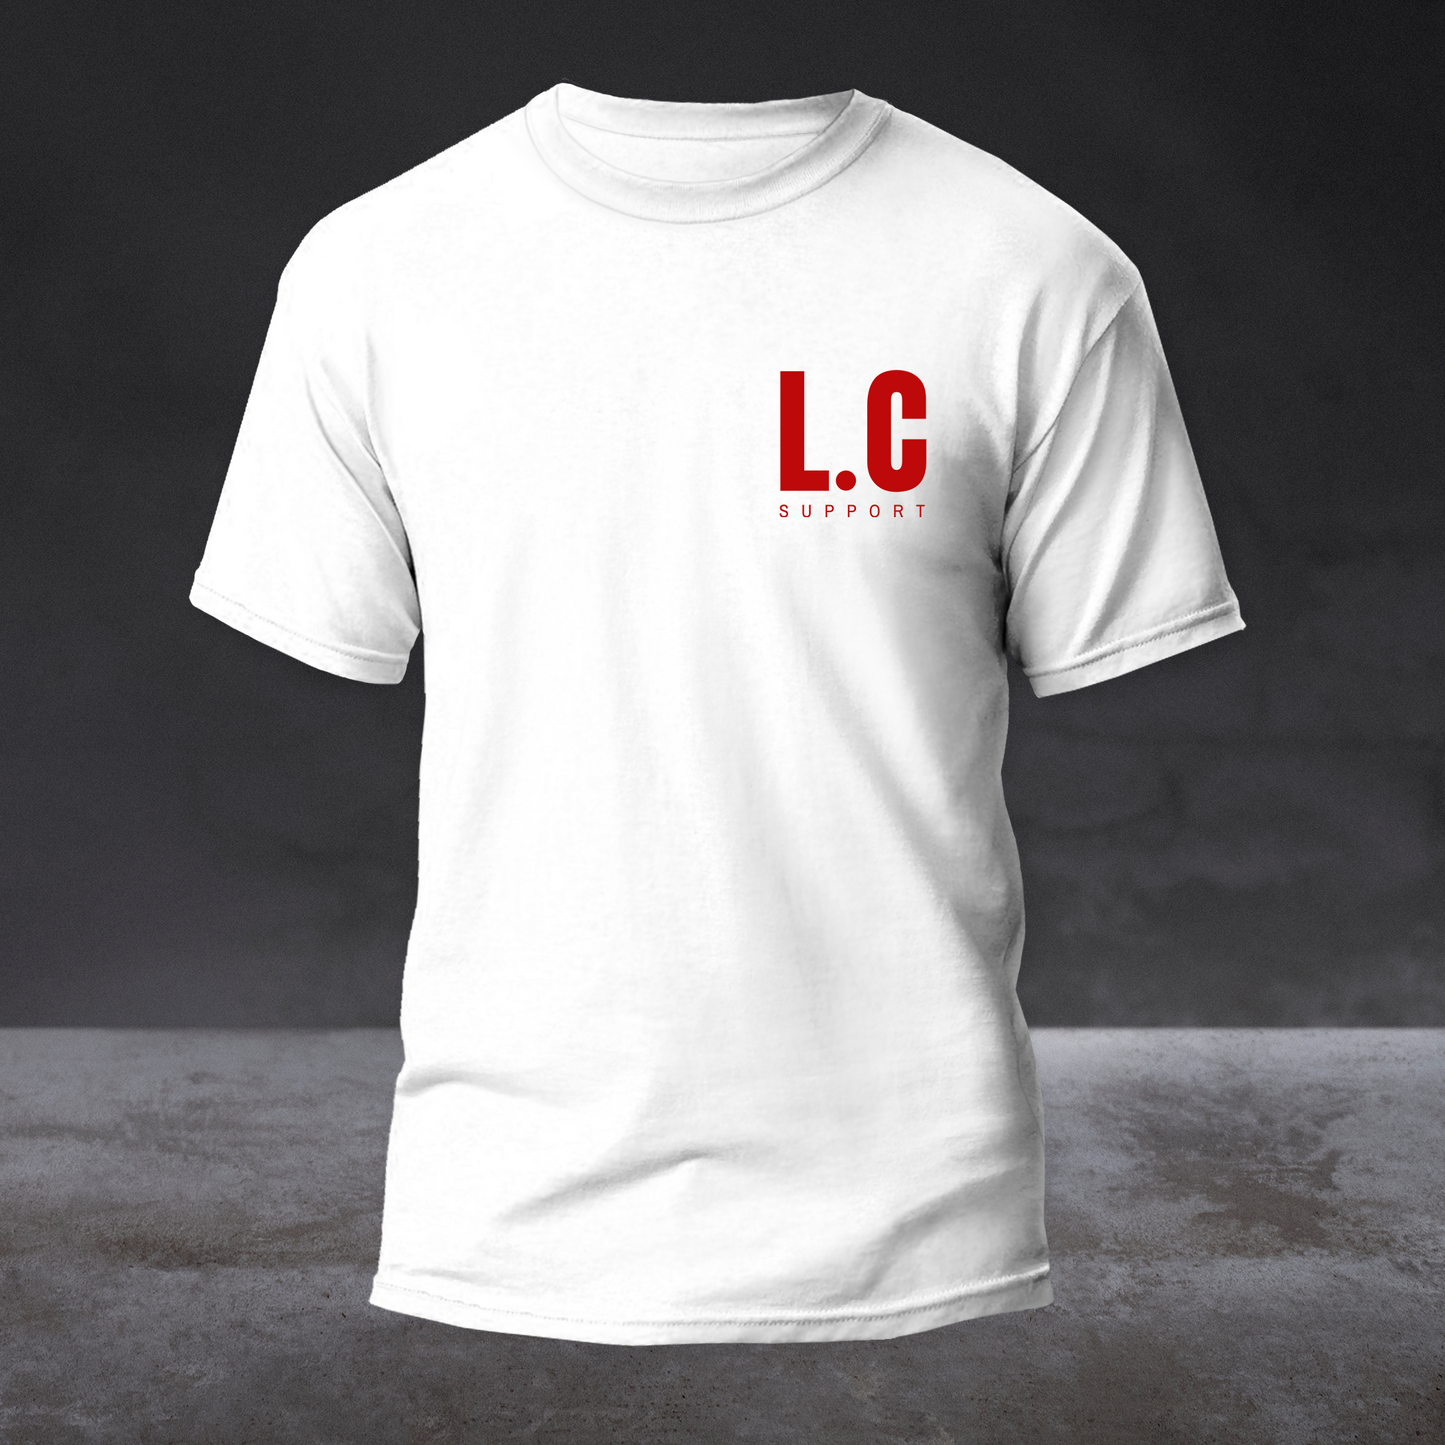 ORIGINAL Lions Cartel Support T-Shirt